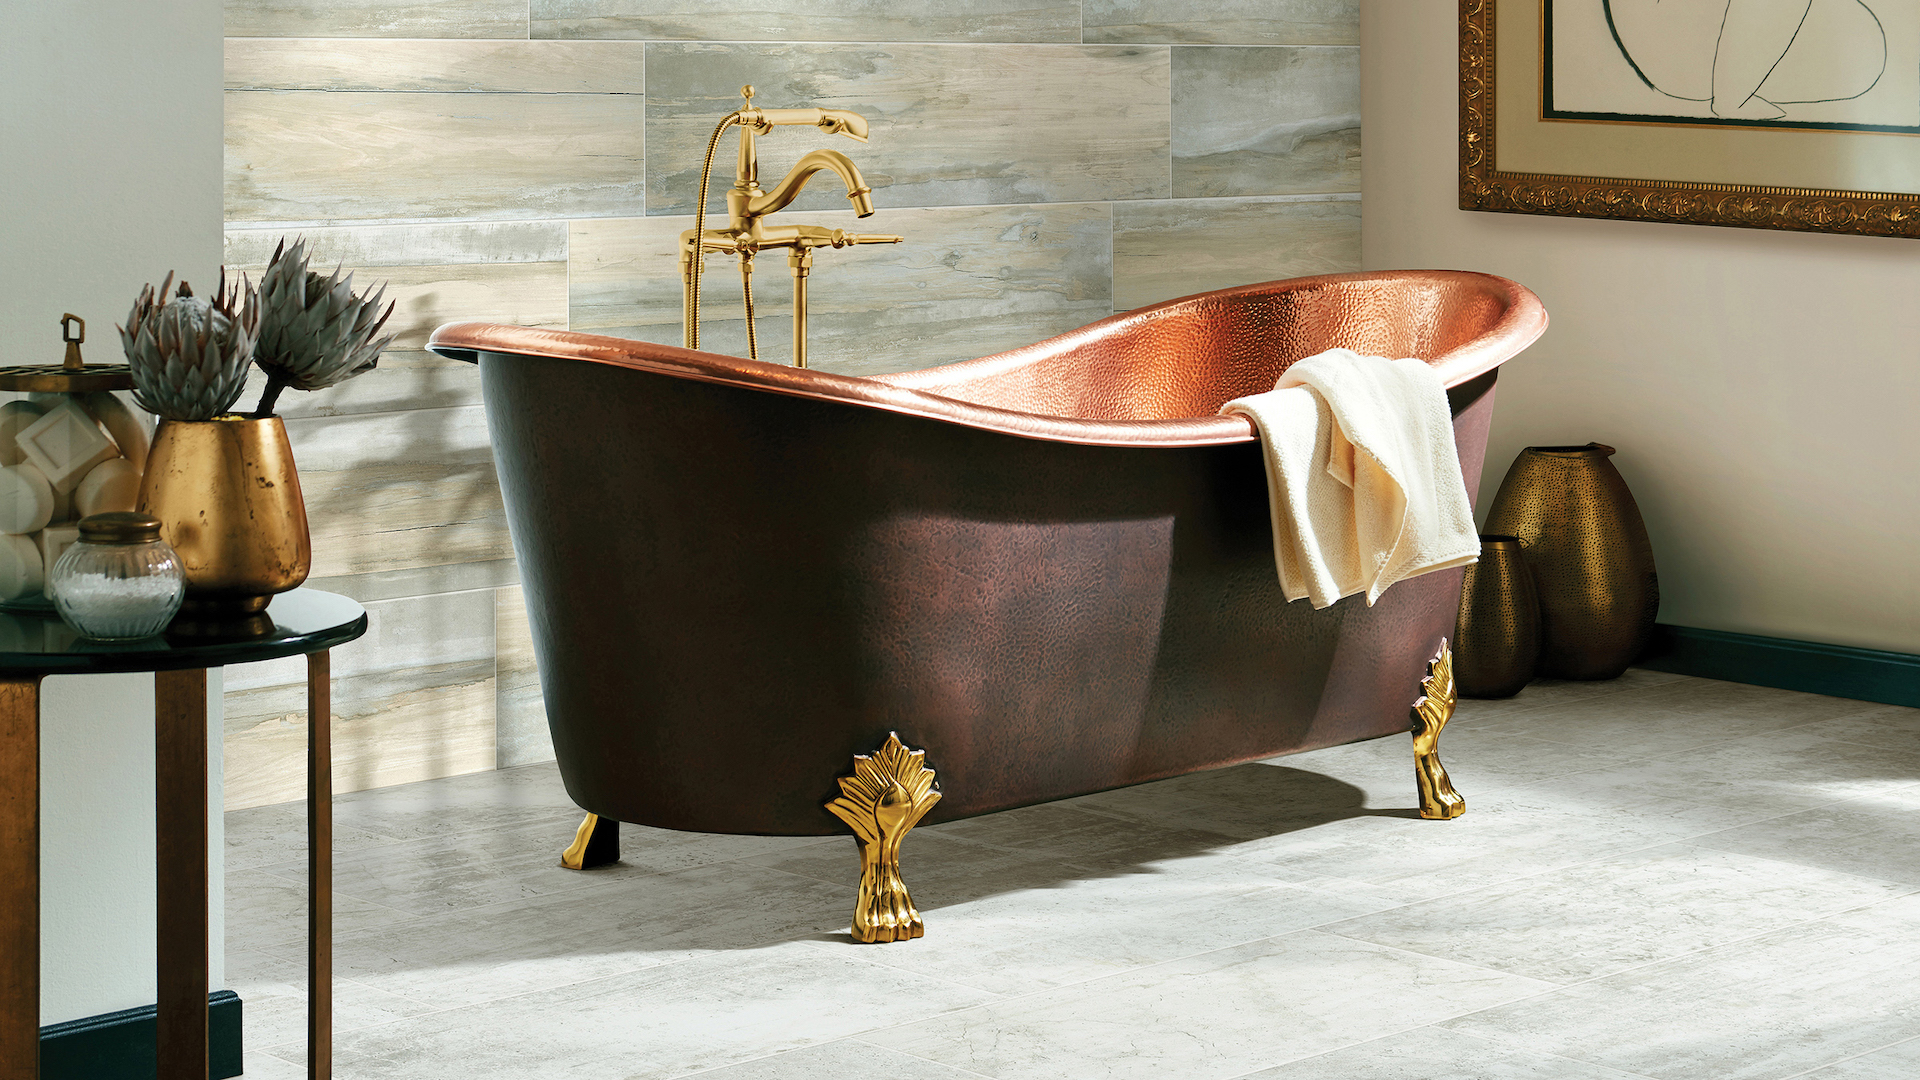 large grey bathroom tiles in an elegant bathroom with a copper tub